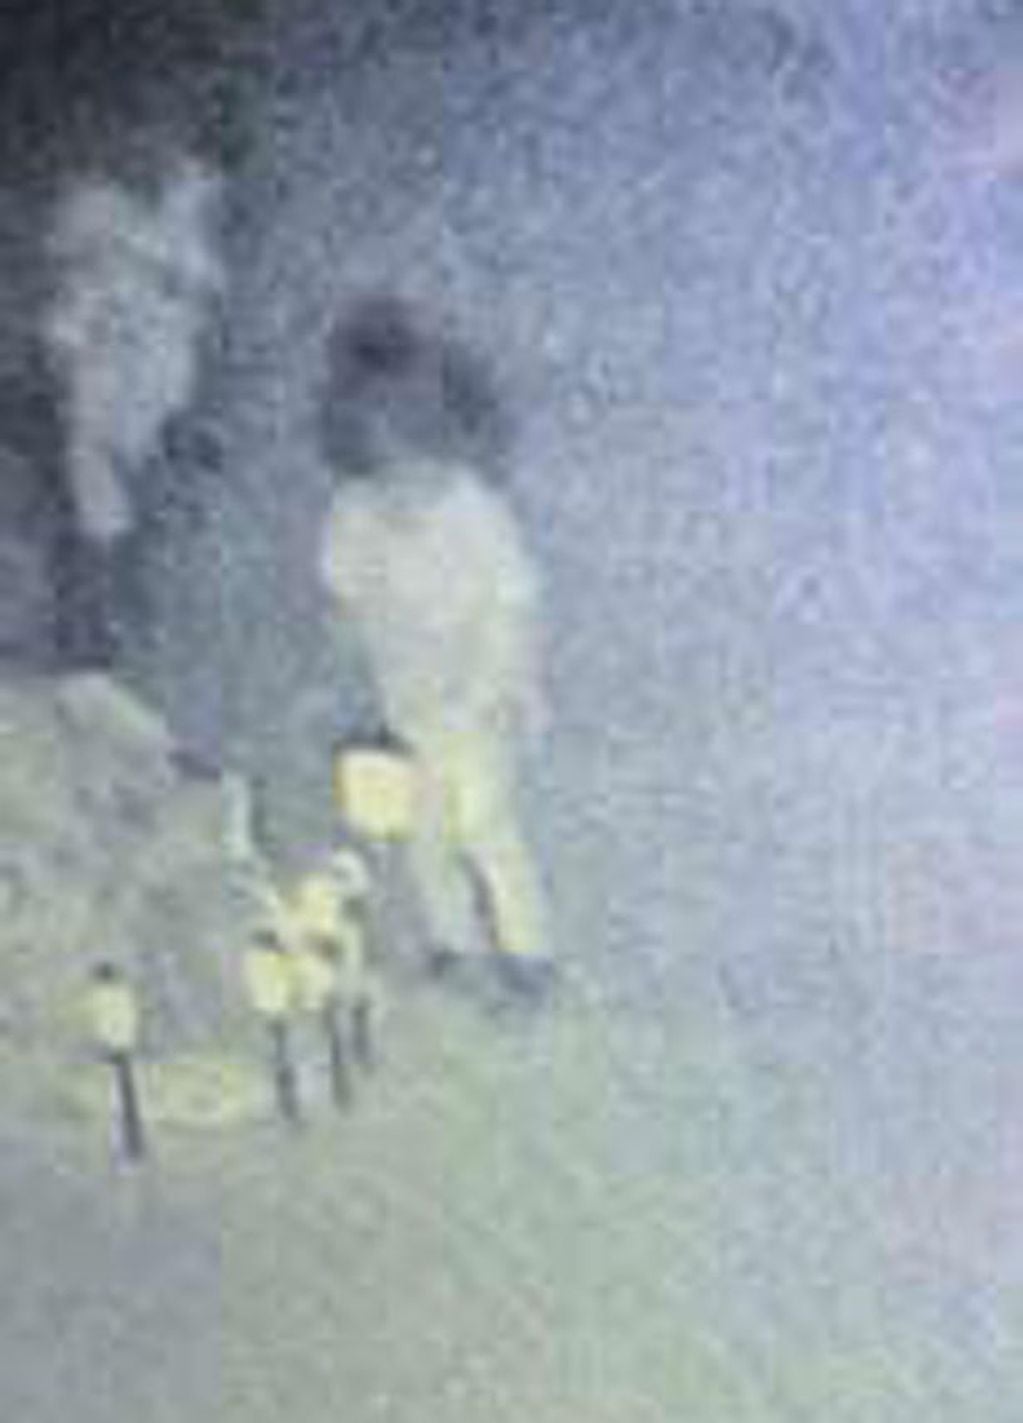 Las imágenes muestran a una nena que deambula por el cementerio y se detiene en varias tumbas.